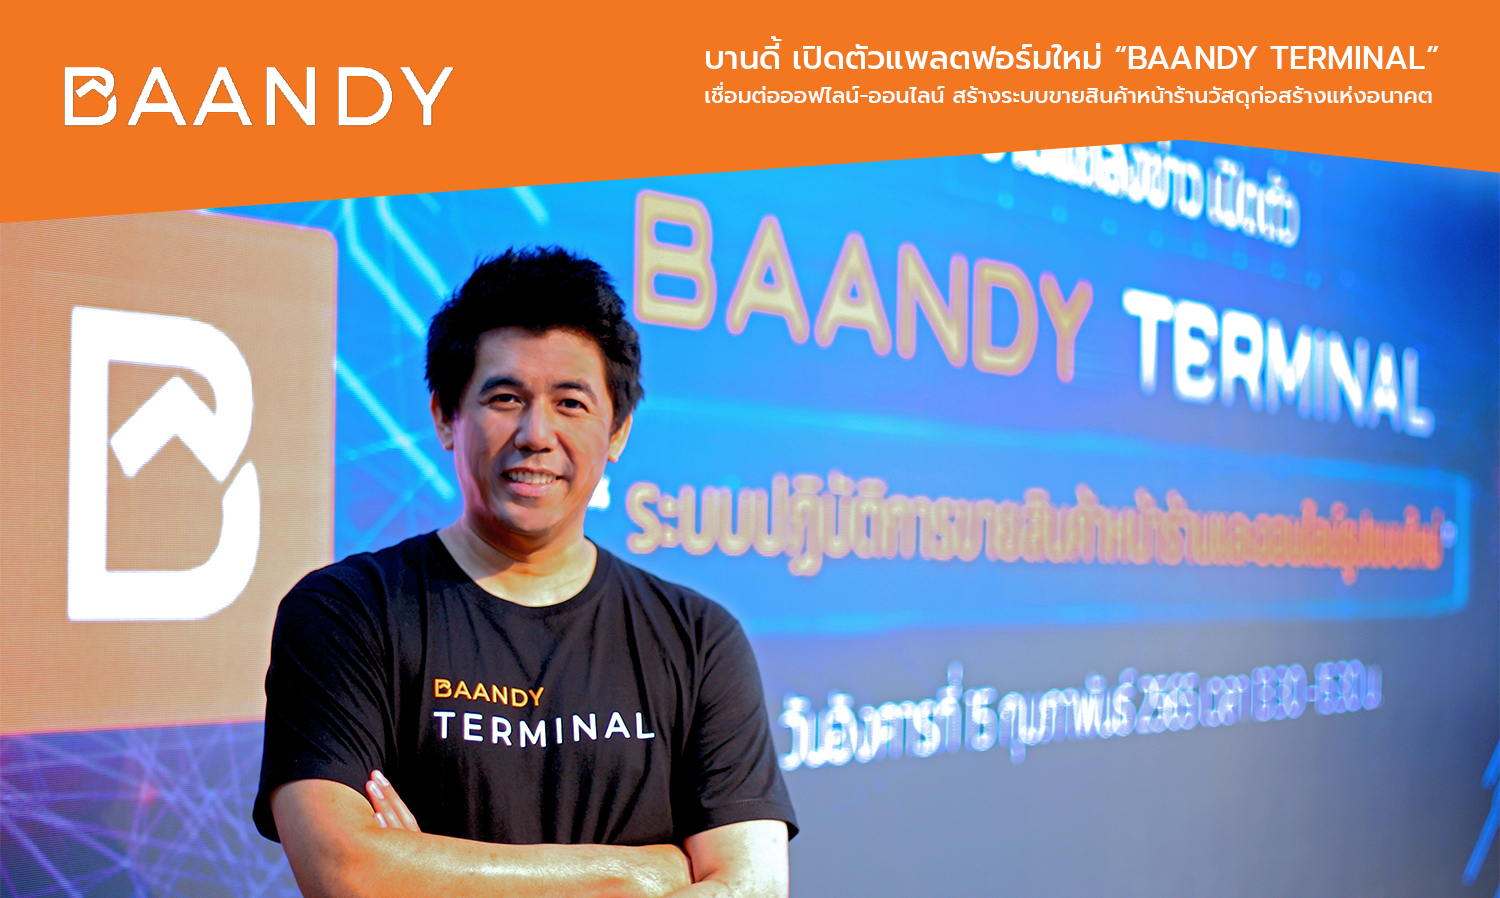 บานดี้ เปิดตัวแพลตฟอร์มใหม่ “BAANDY Terminal” เชื่อมต่อออฟไลน์-ออนไลน์ สร้างระบบขายสินค้าหน้าร้านวัสดุก่อสร้างแห่งอนาคต